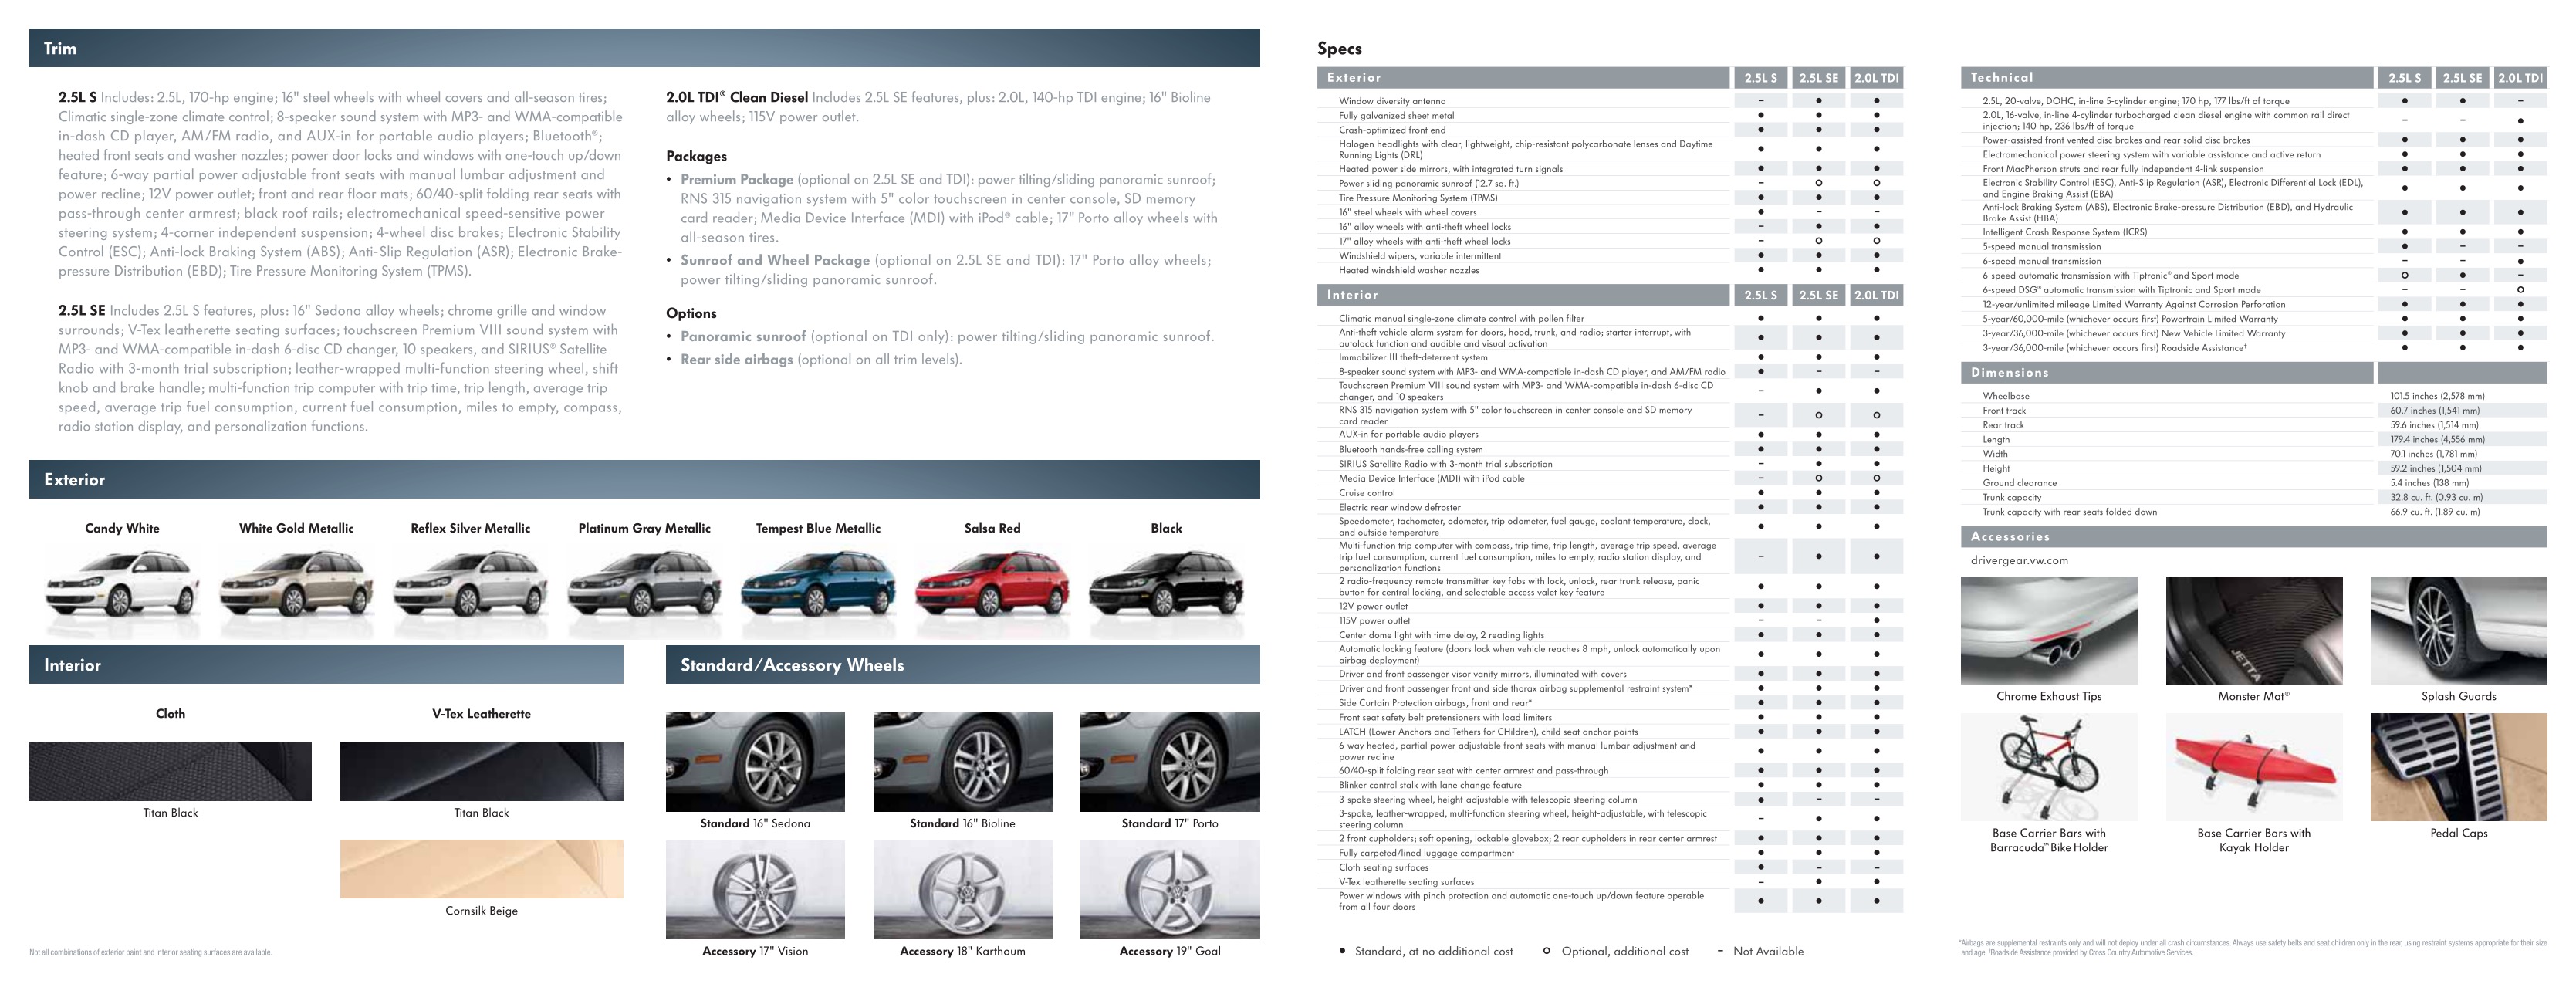 2011 VW Jetta Sport Wagen Brochure Page 3